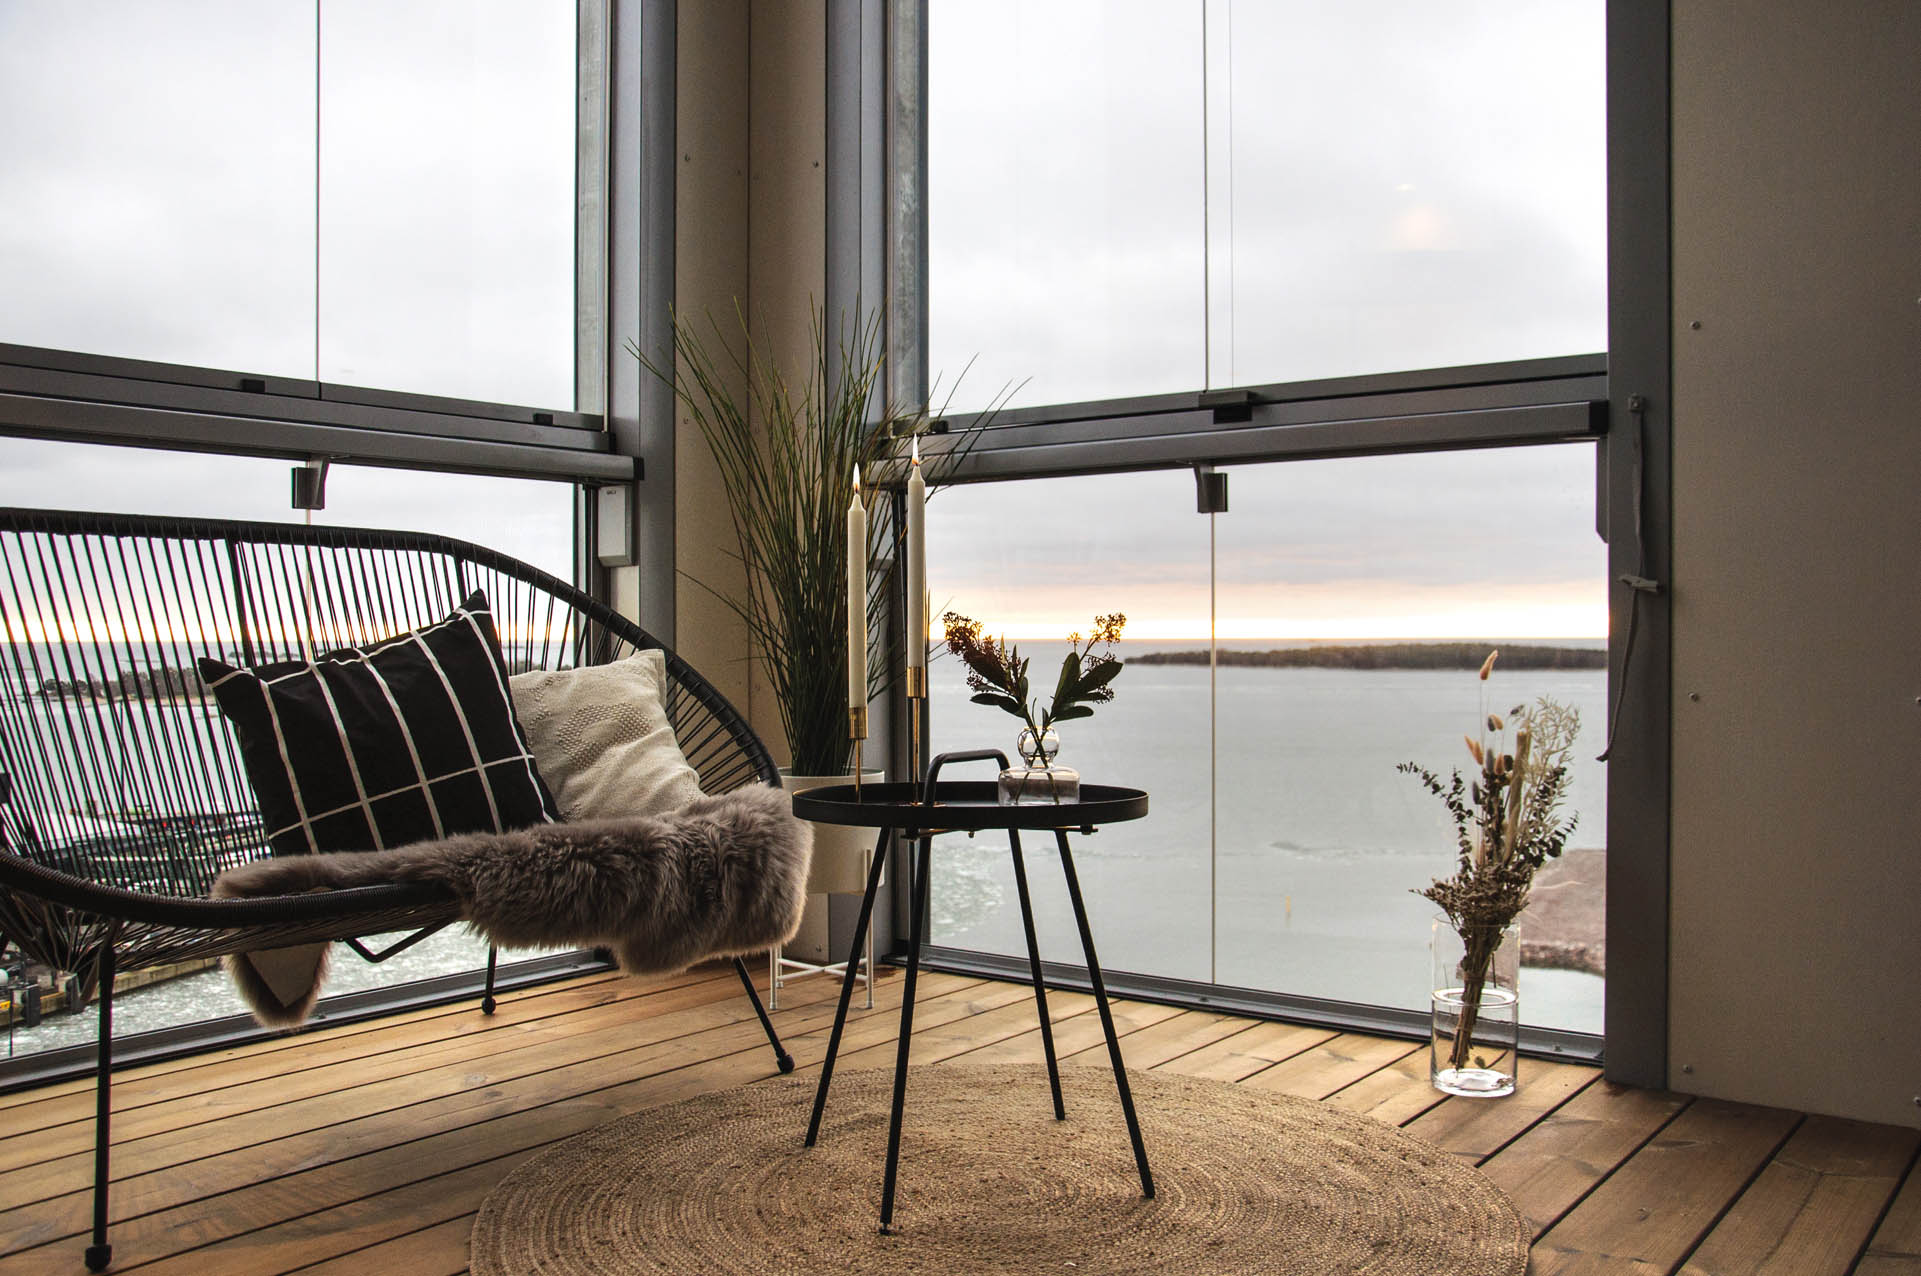 Sitzgelegenheit auf einem verglasten Balkon mit Blick aufs Meer